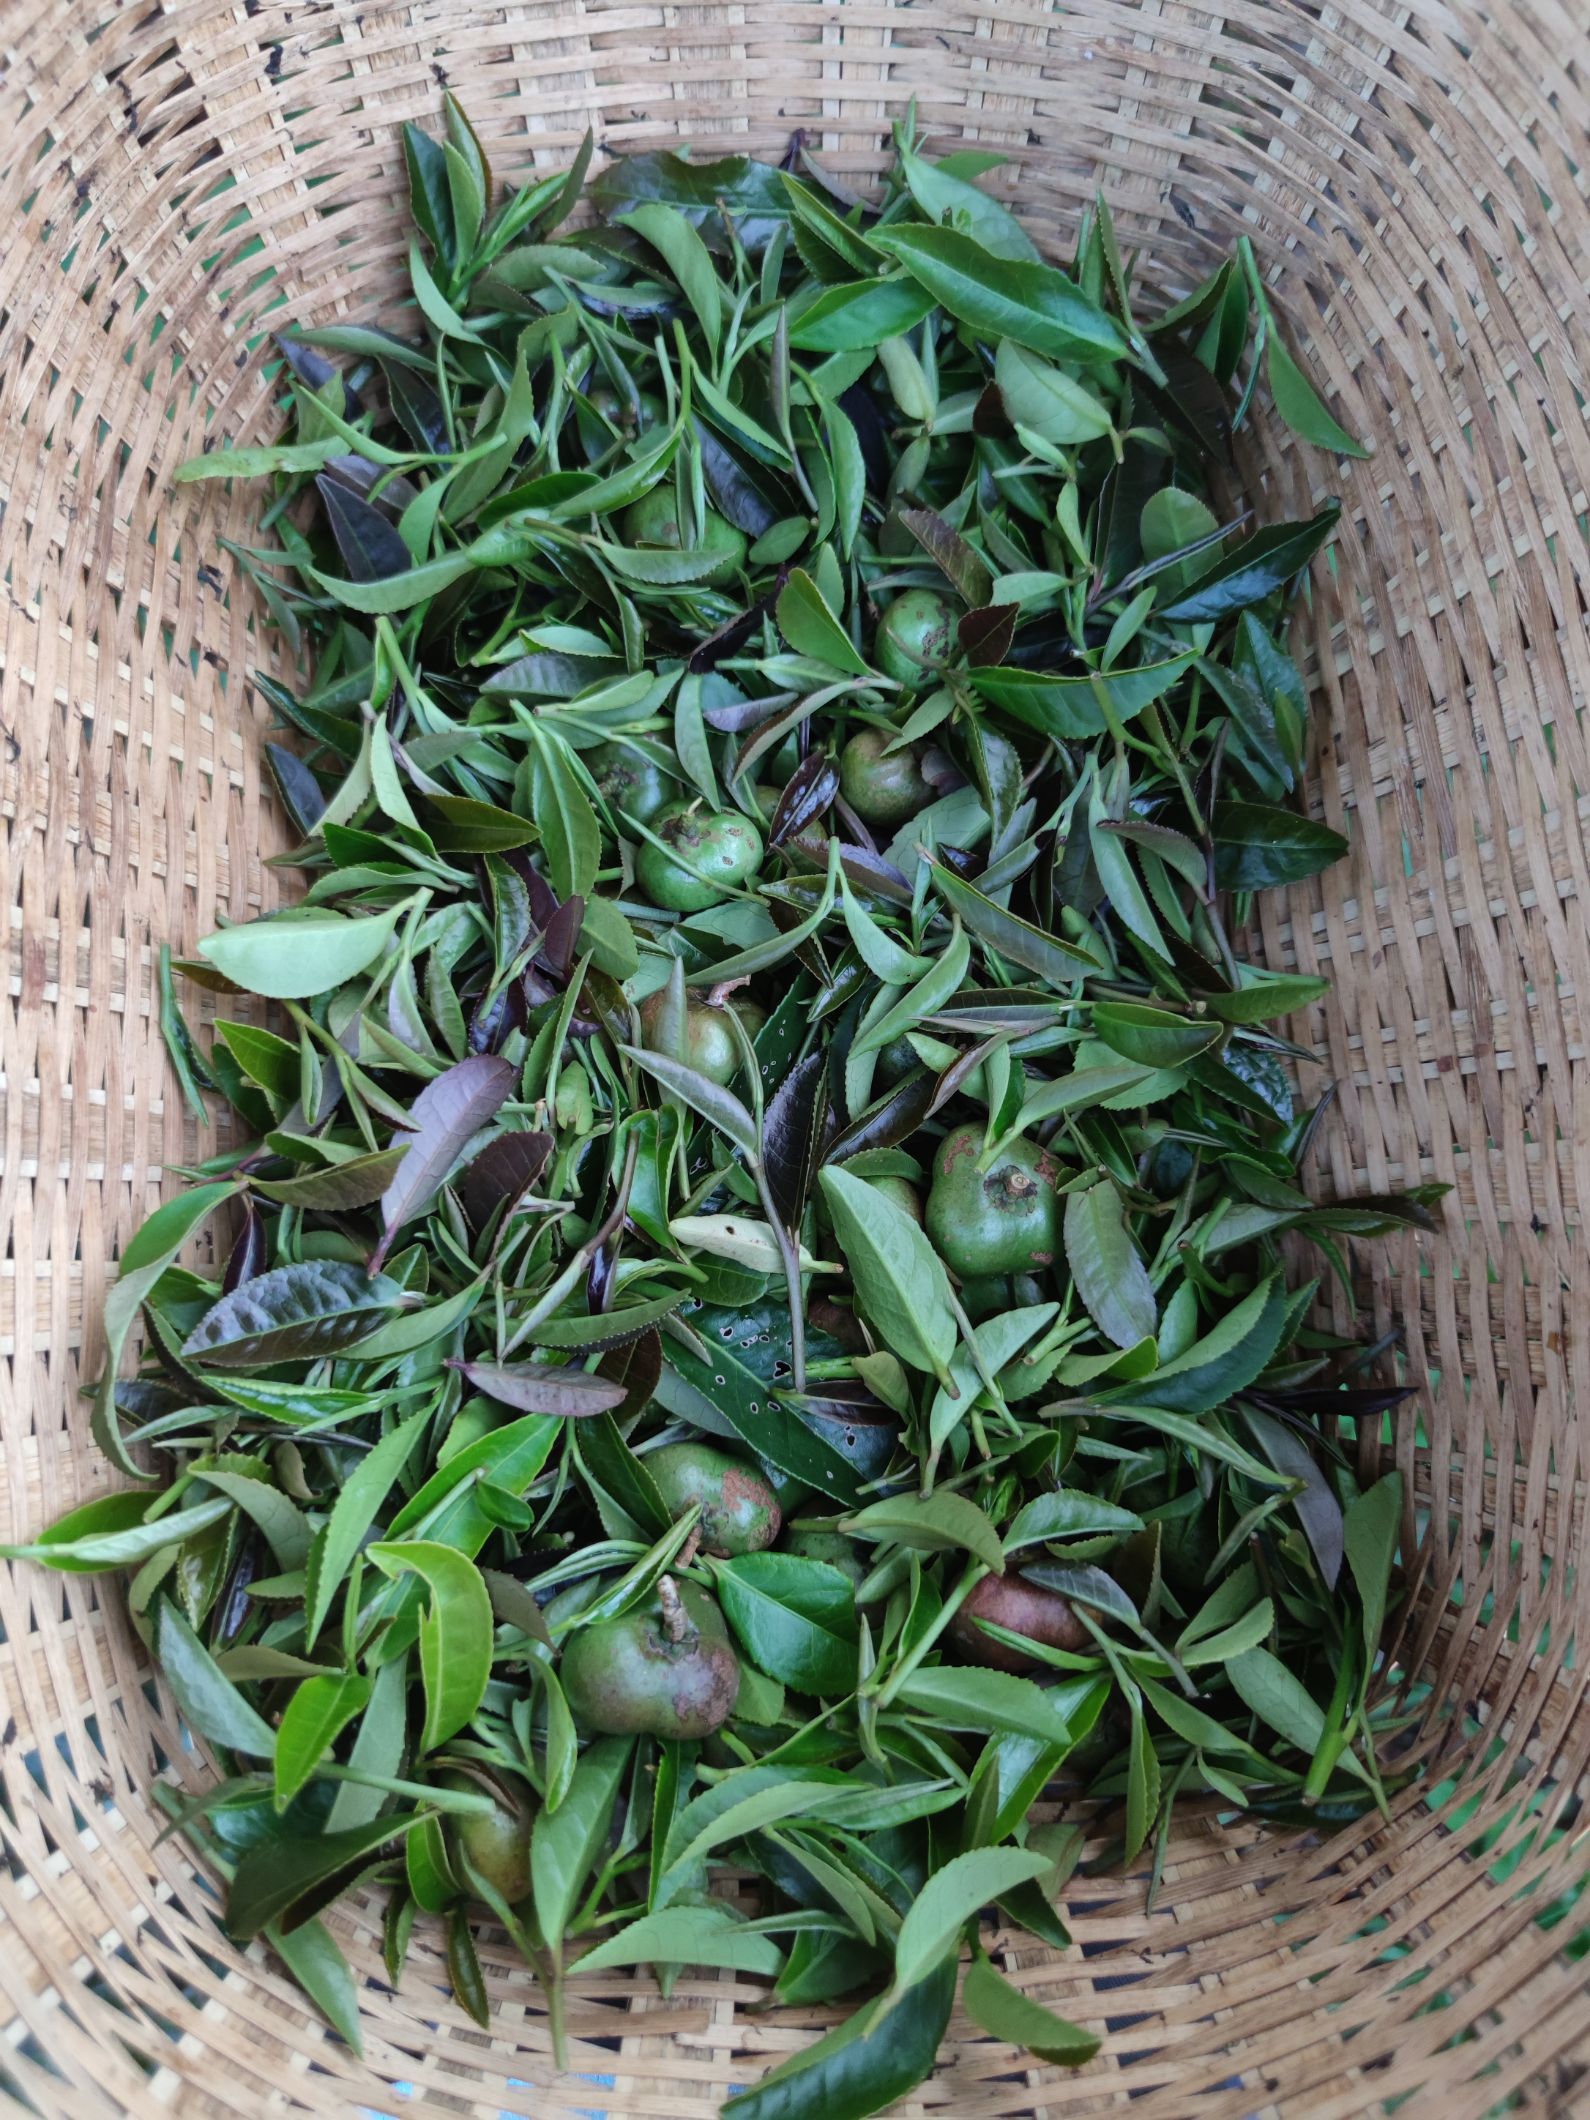 民宿由茶叶公司经营。六堡茶制作工艺非遗传承人带着旅客从采茶等一系列工序全程参与，并带走自己制作的茶叶